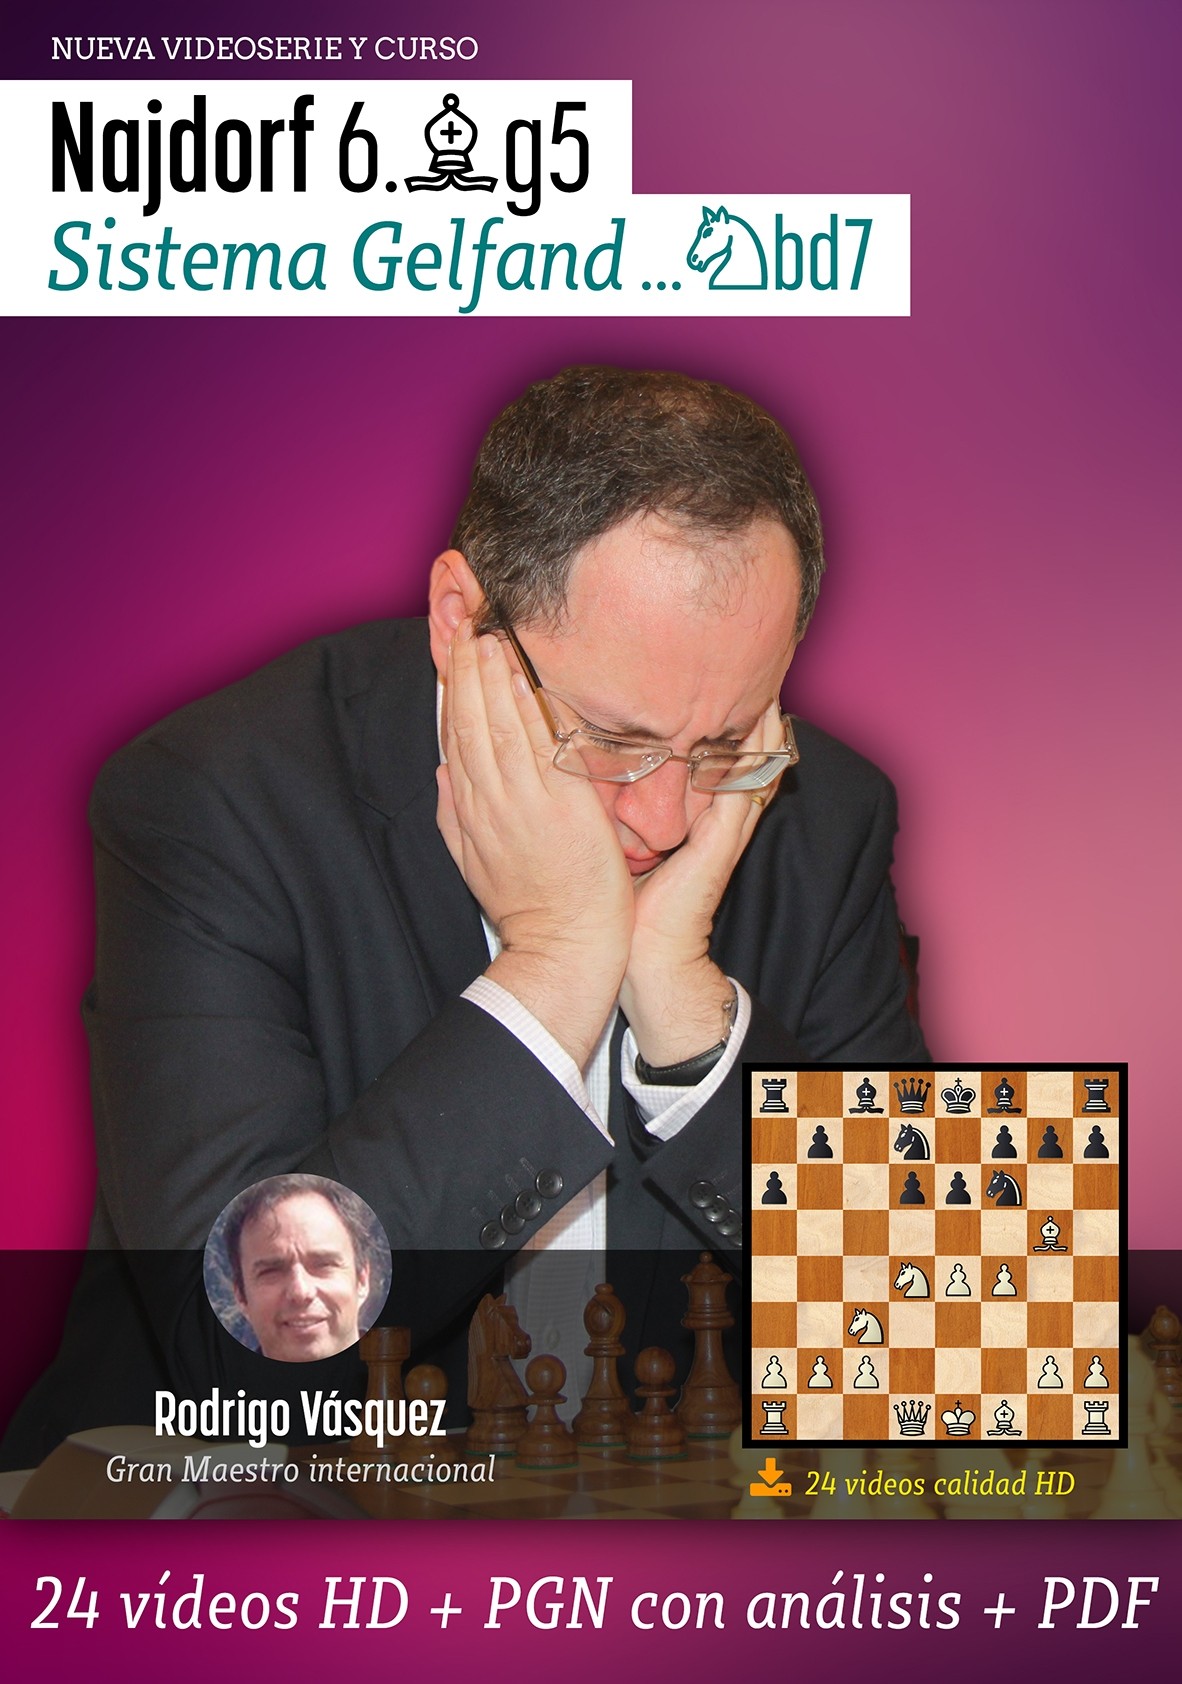 Curso completo del Sistema Gelfand en la Najdorf 6.Ag5 - Internet